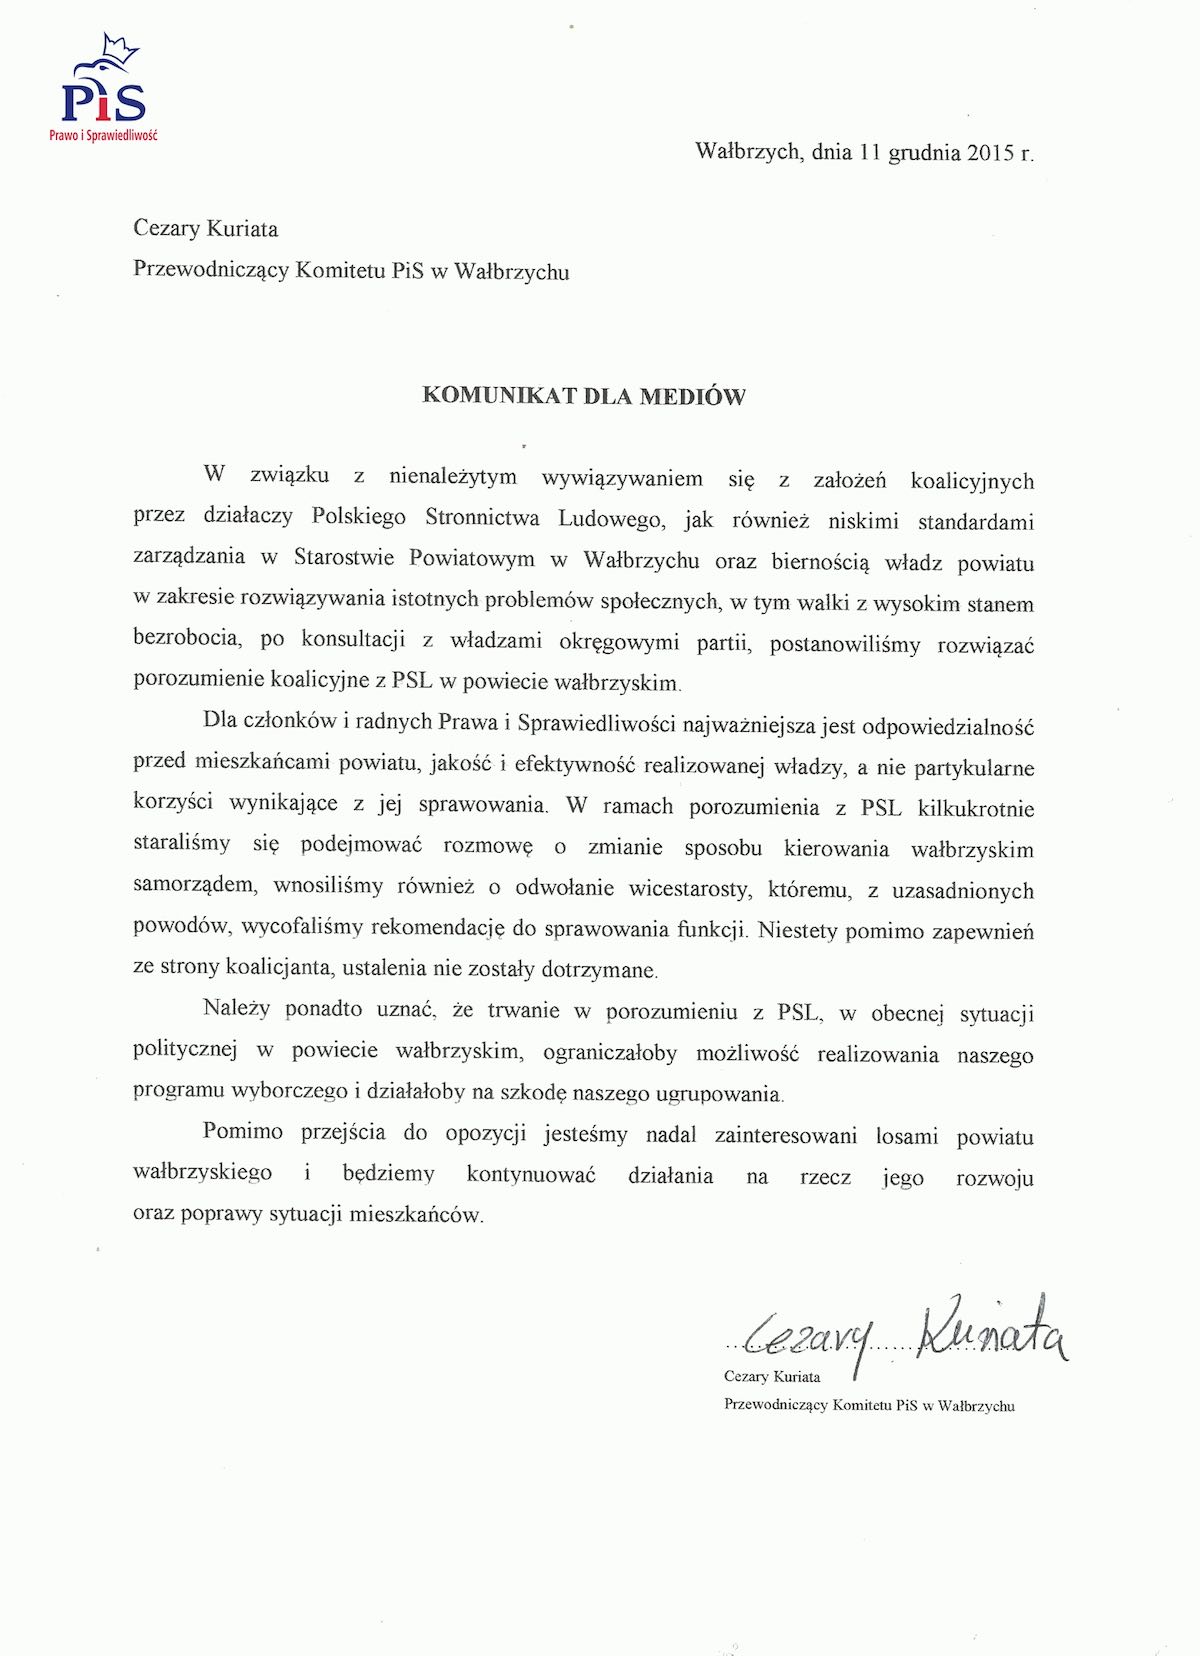 Wałbrzych, 12.12.2015 List z biura PiS w sprawie wypowiedzenia umowy koalicyjnej w Powiecie Wałbrzyskim